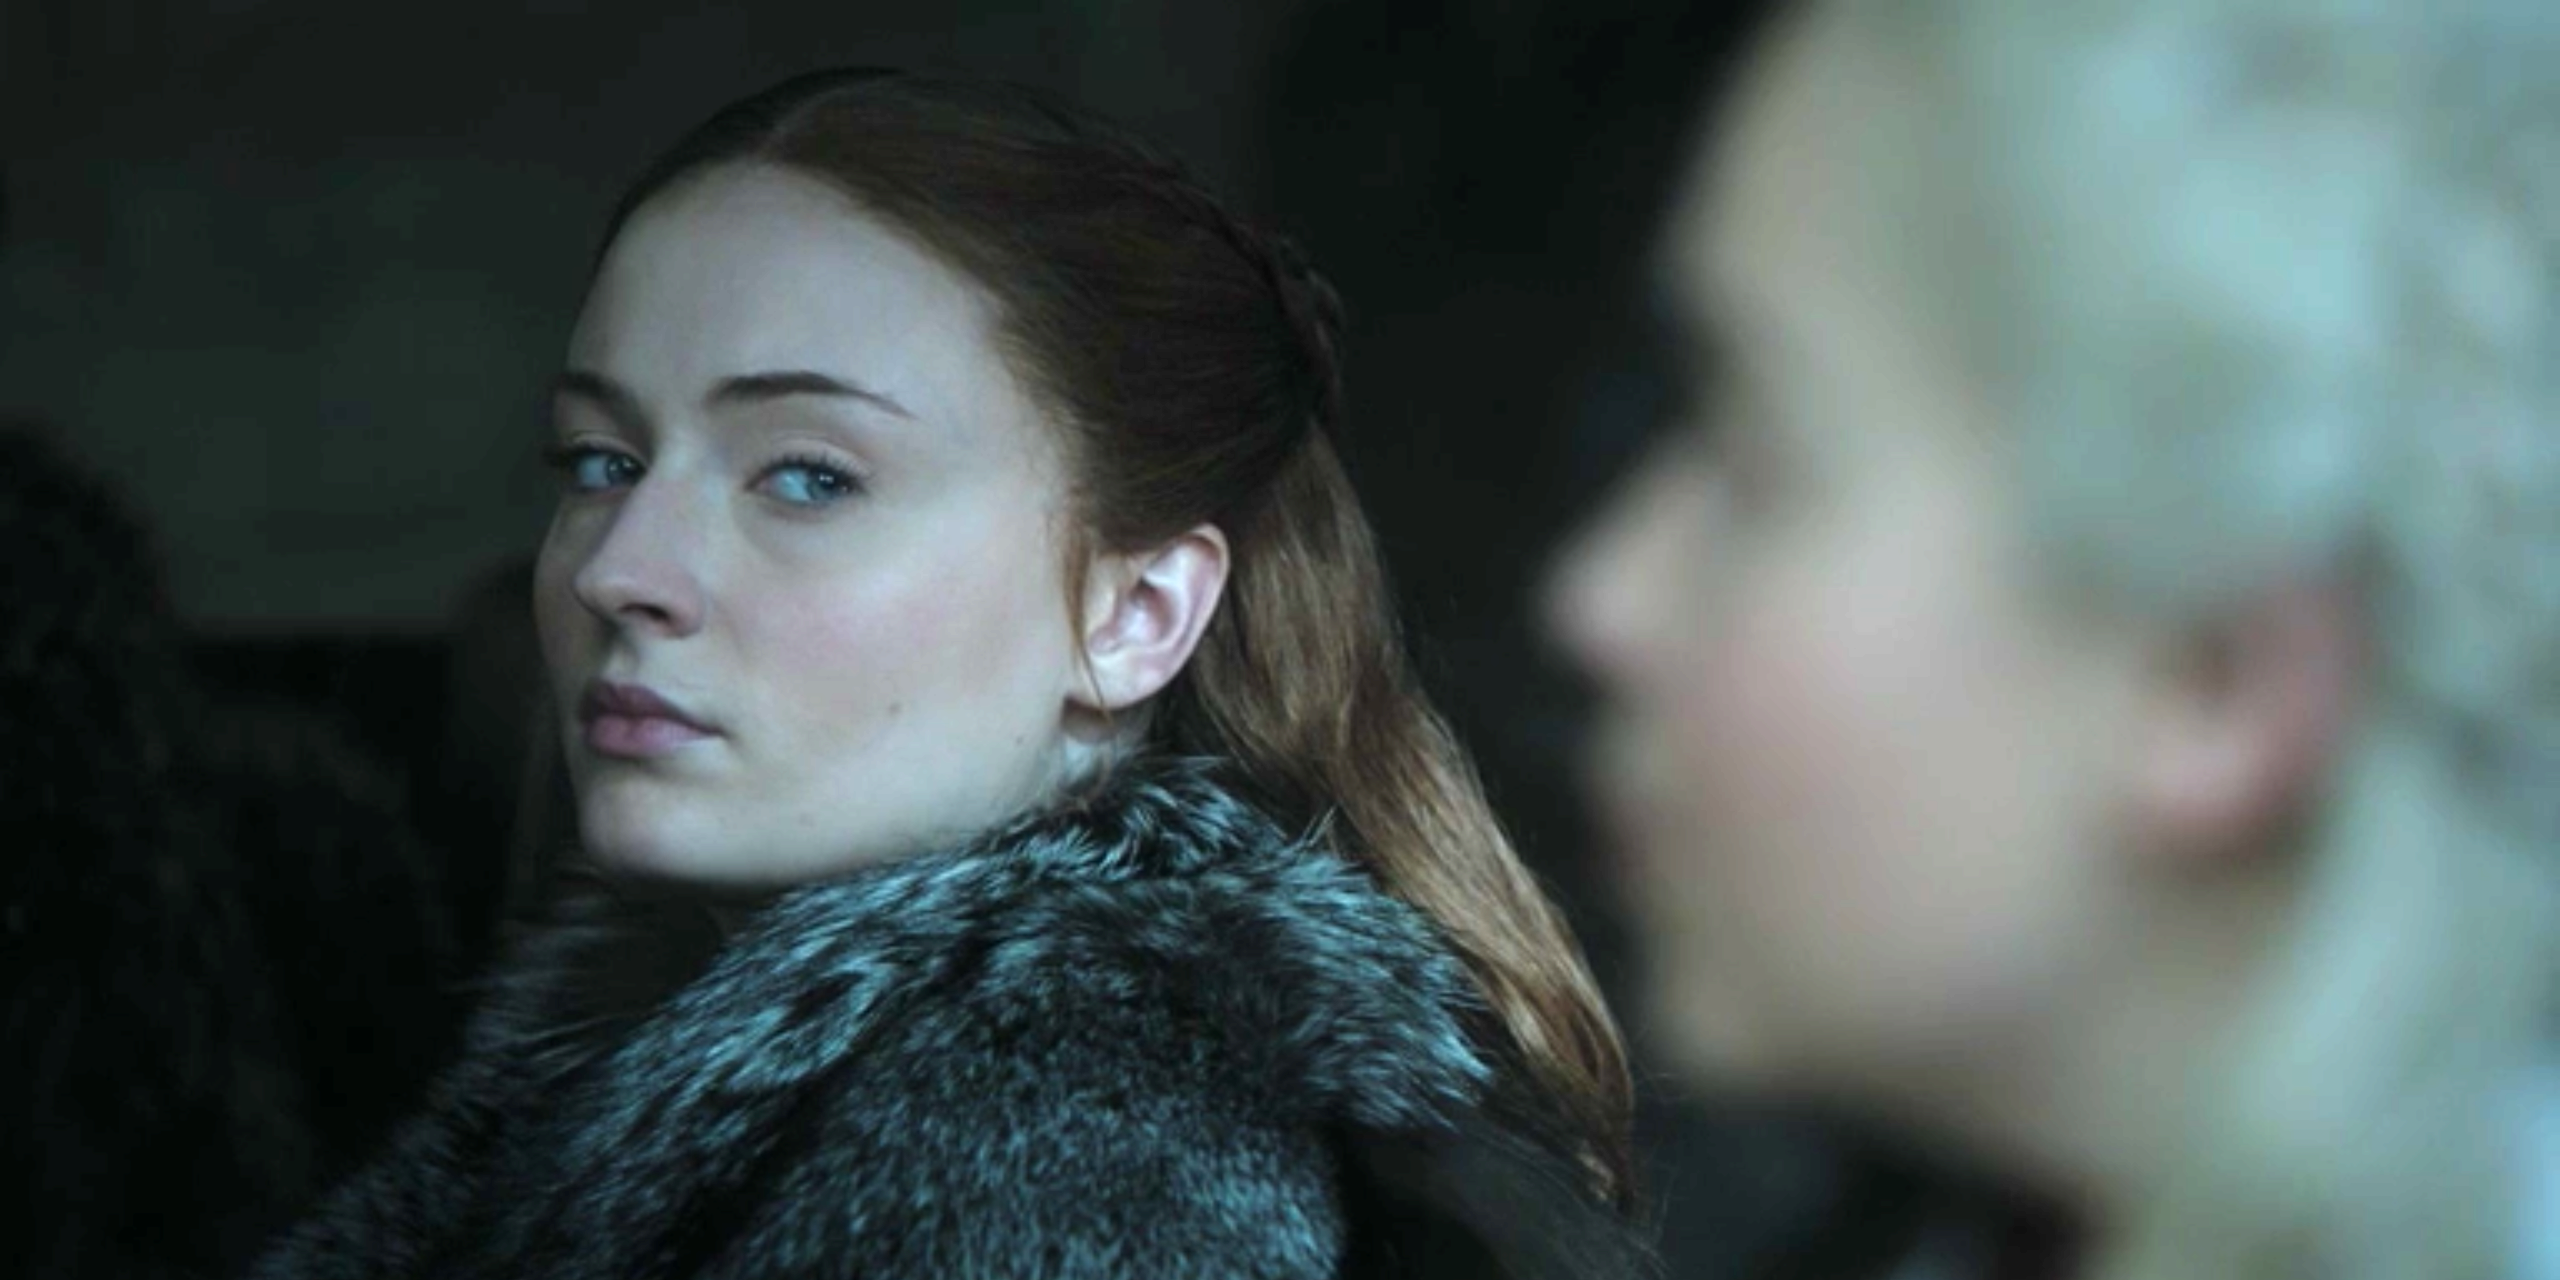 Sansa Stark glares at Daenerys Targaryen.